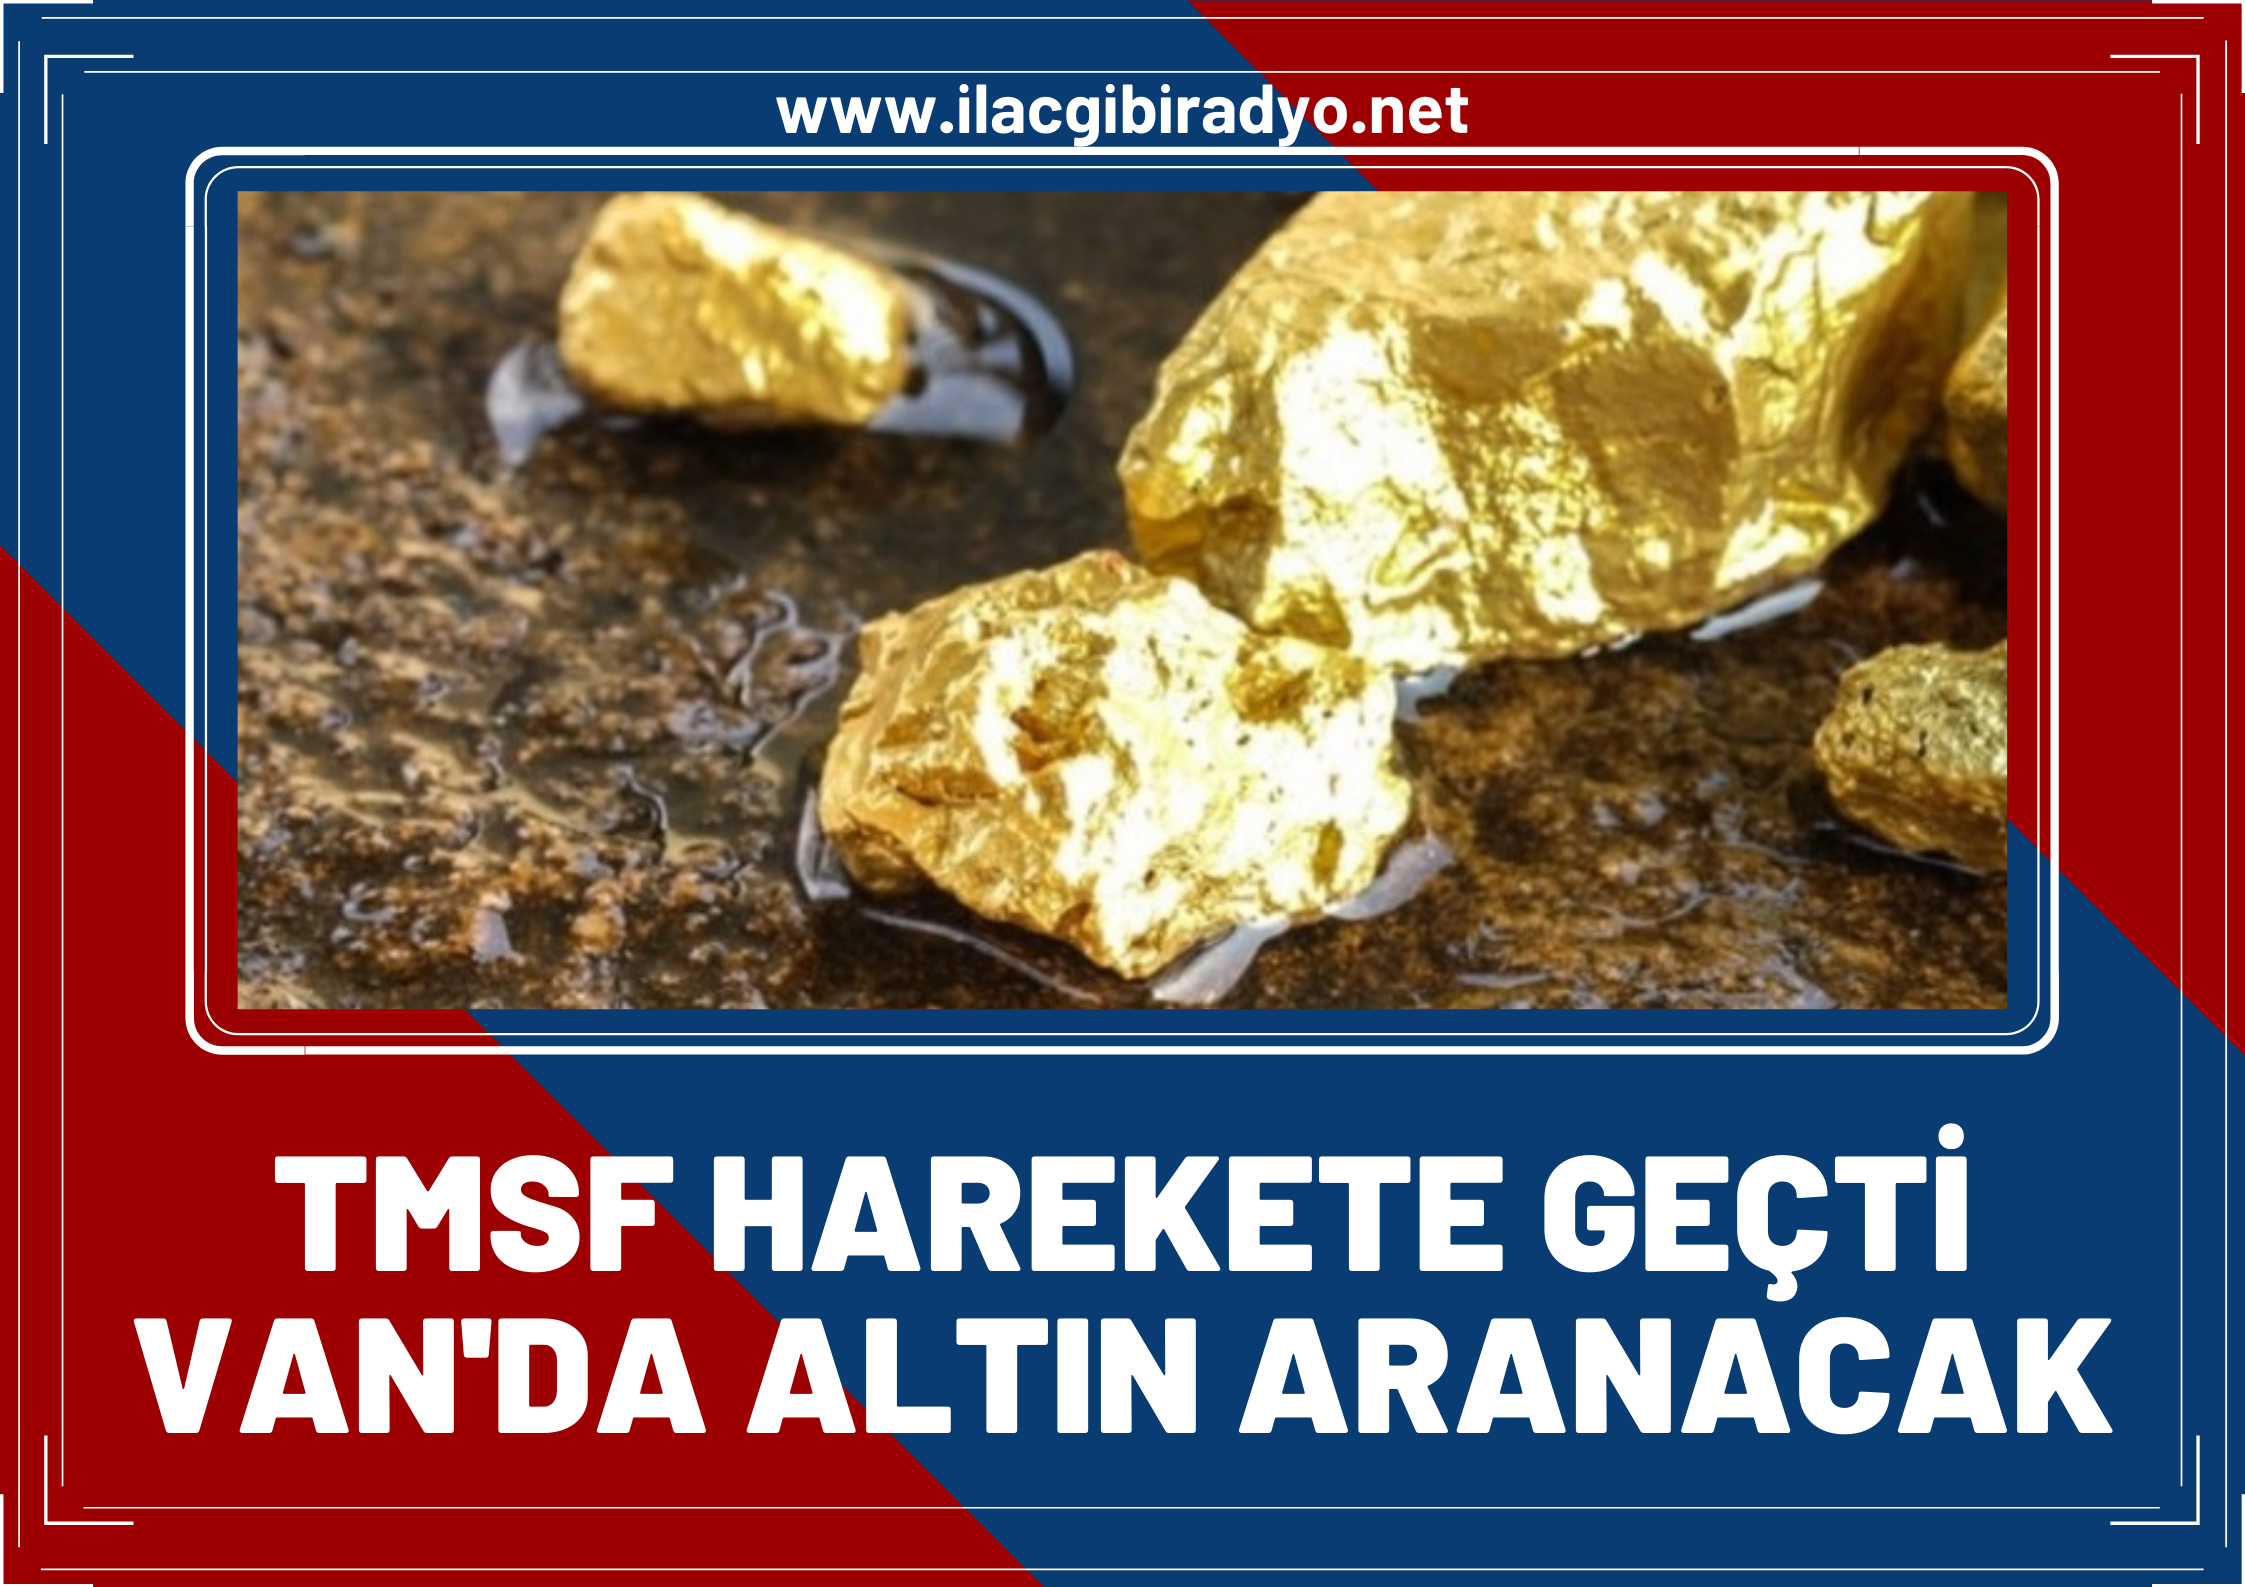 TMSF harekete geçti… Van’da altın araması yapılacak!